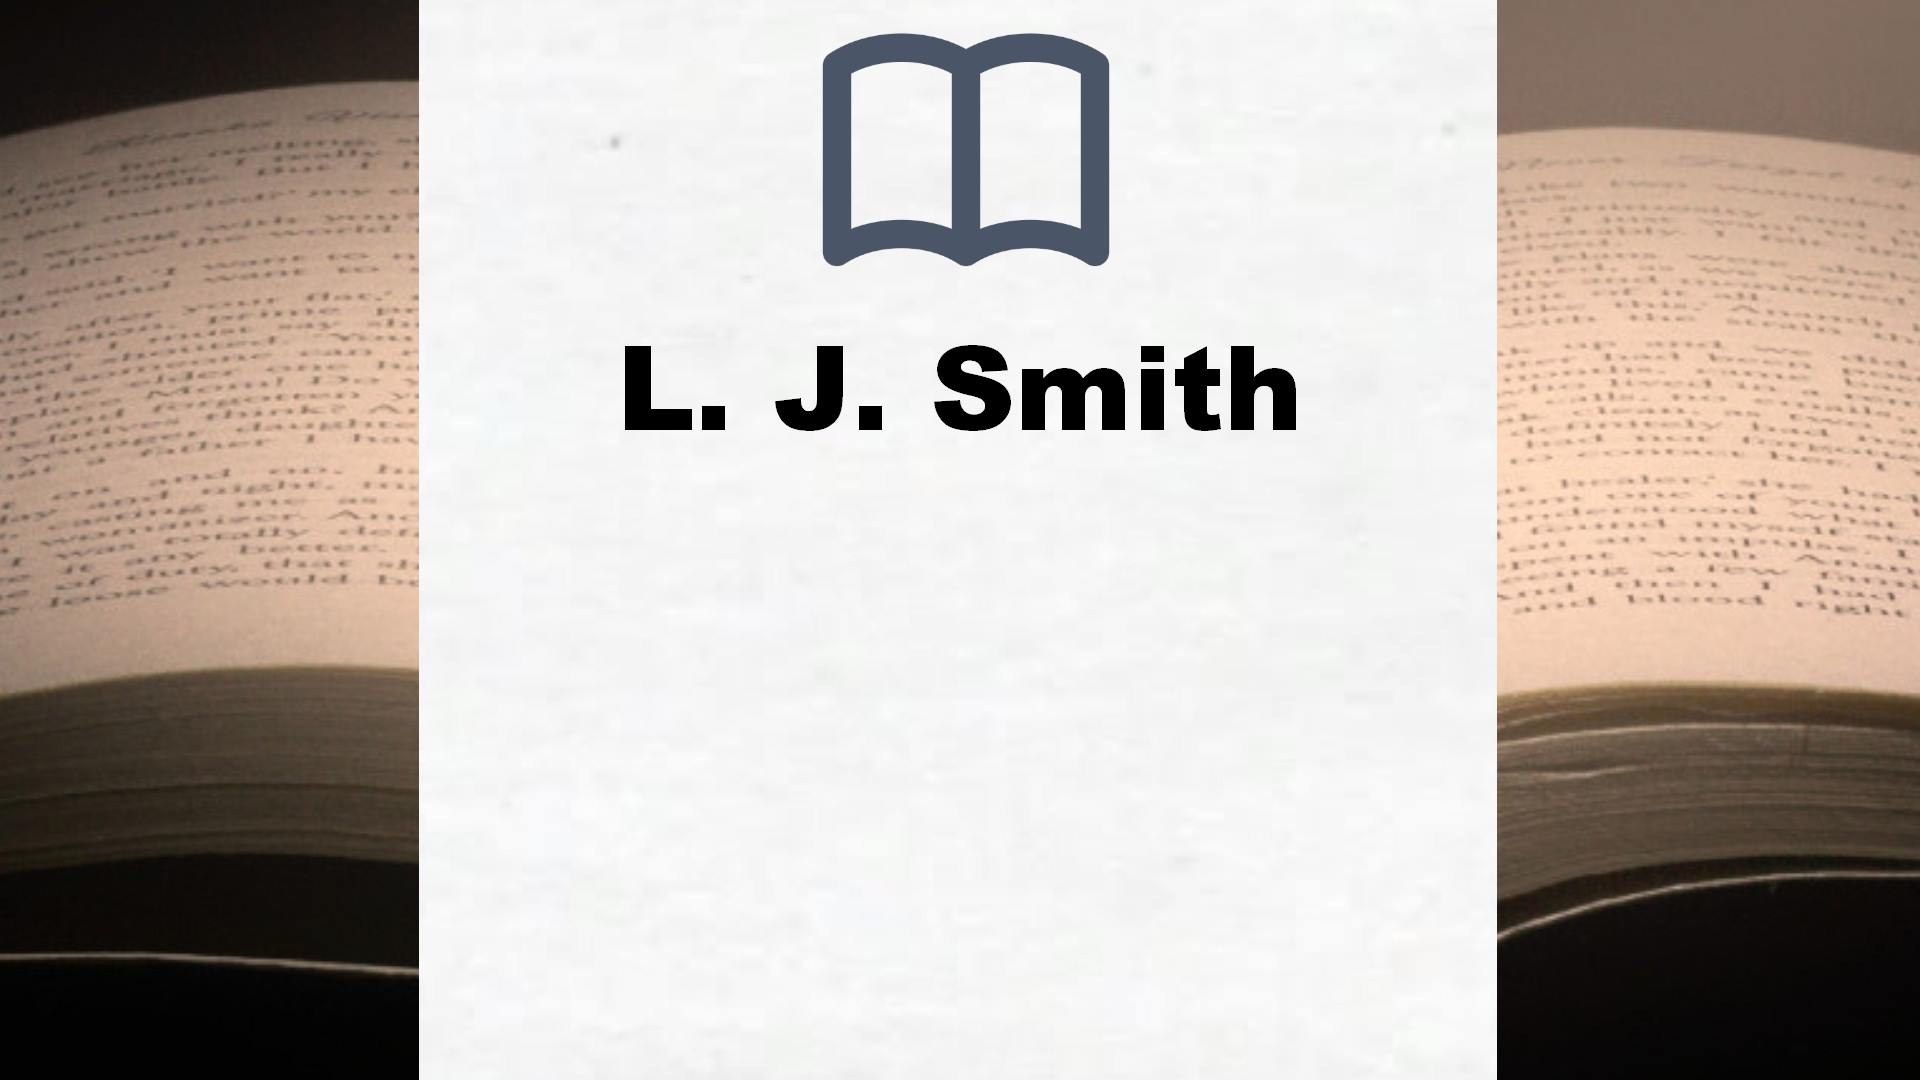 Libros L. J. Smith